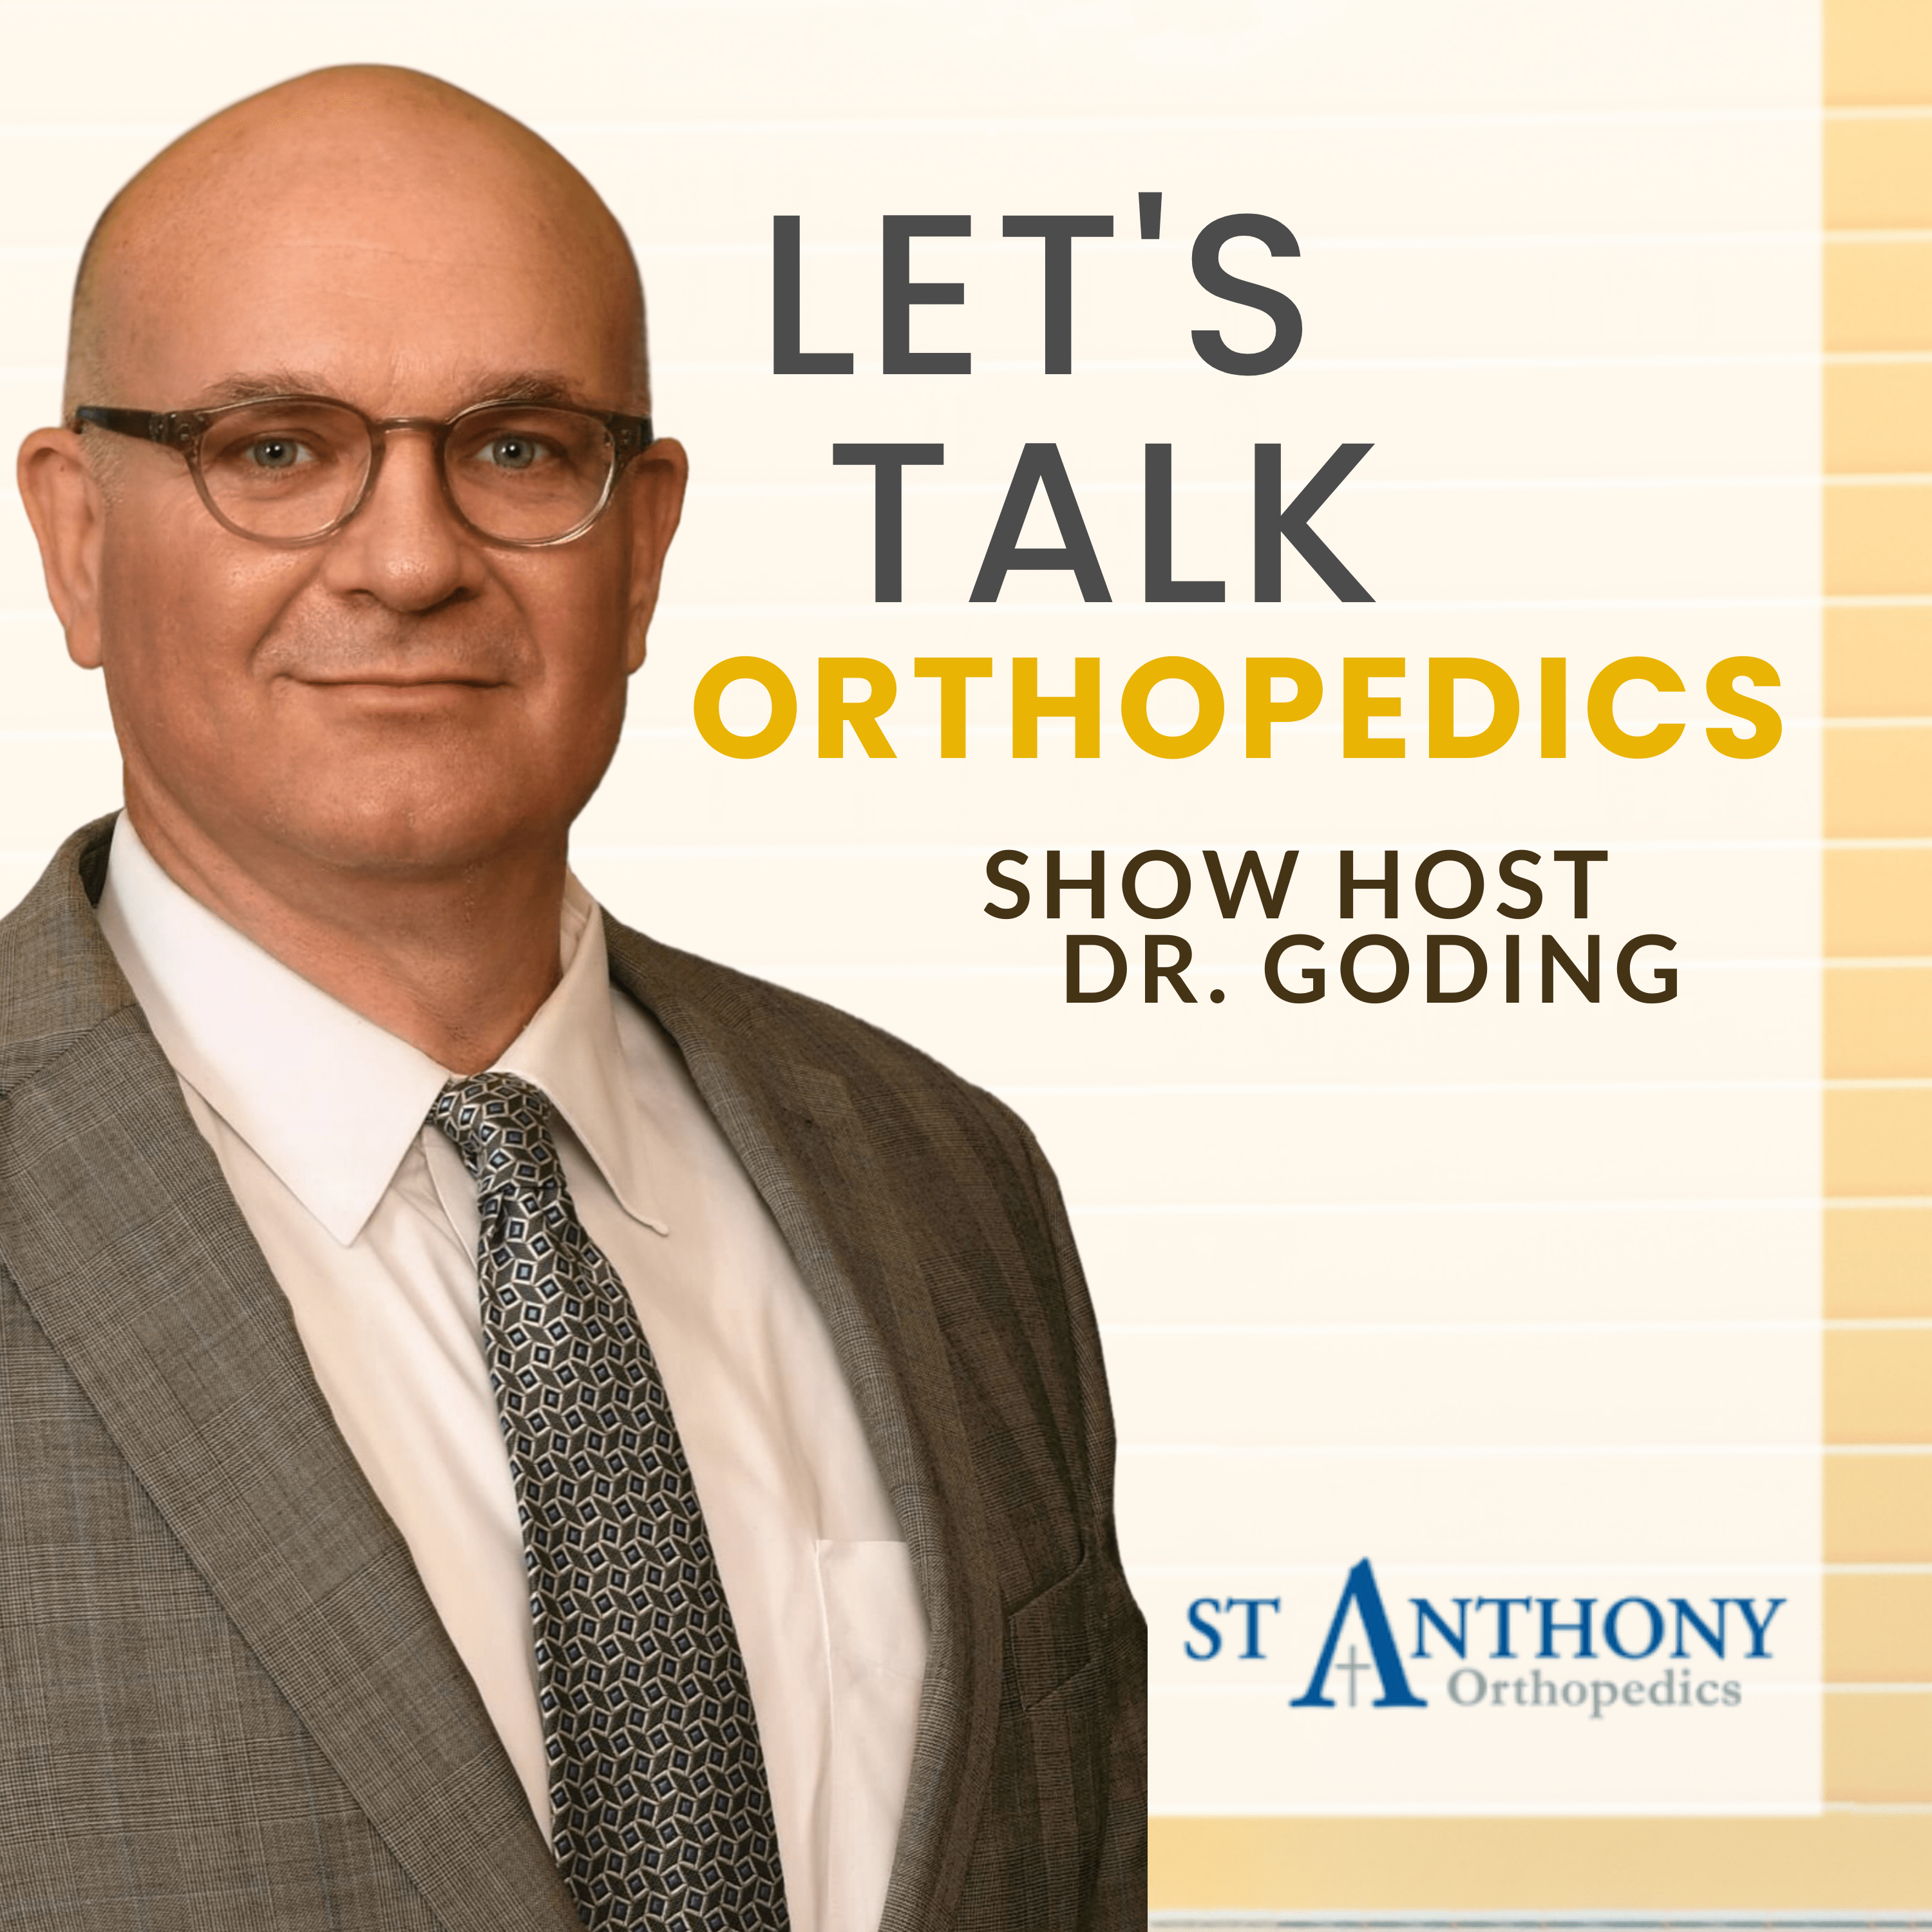 St. Anthony Hospital Orthopedics Show